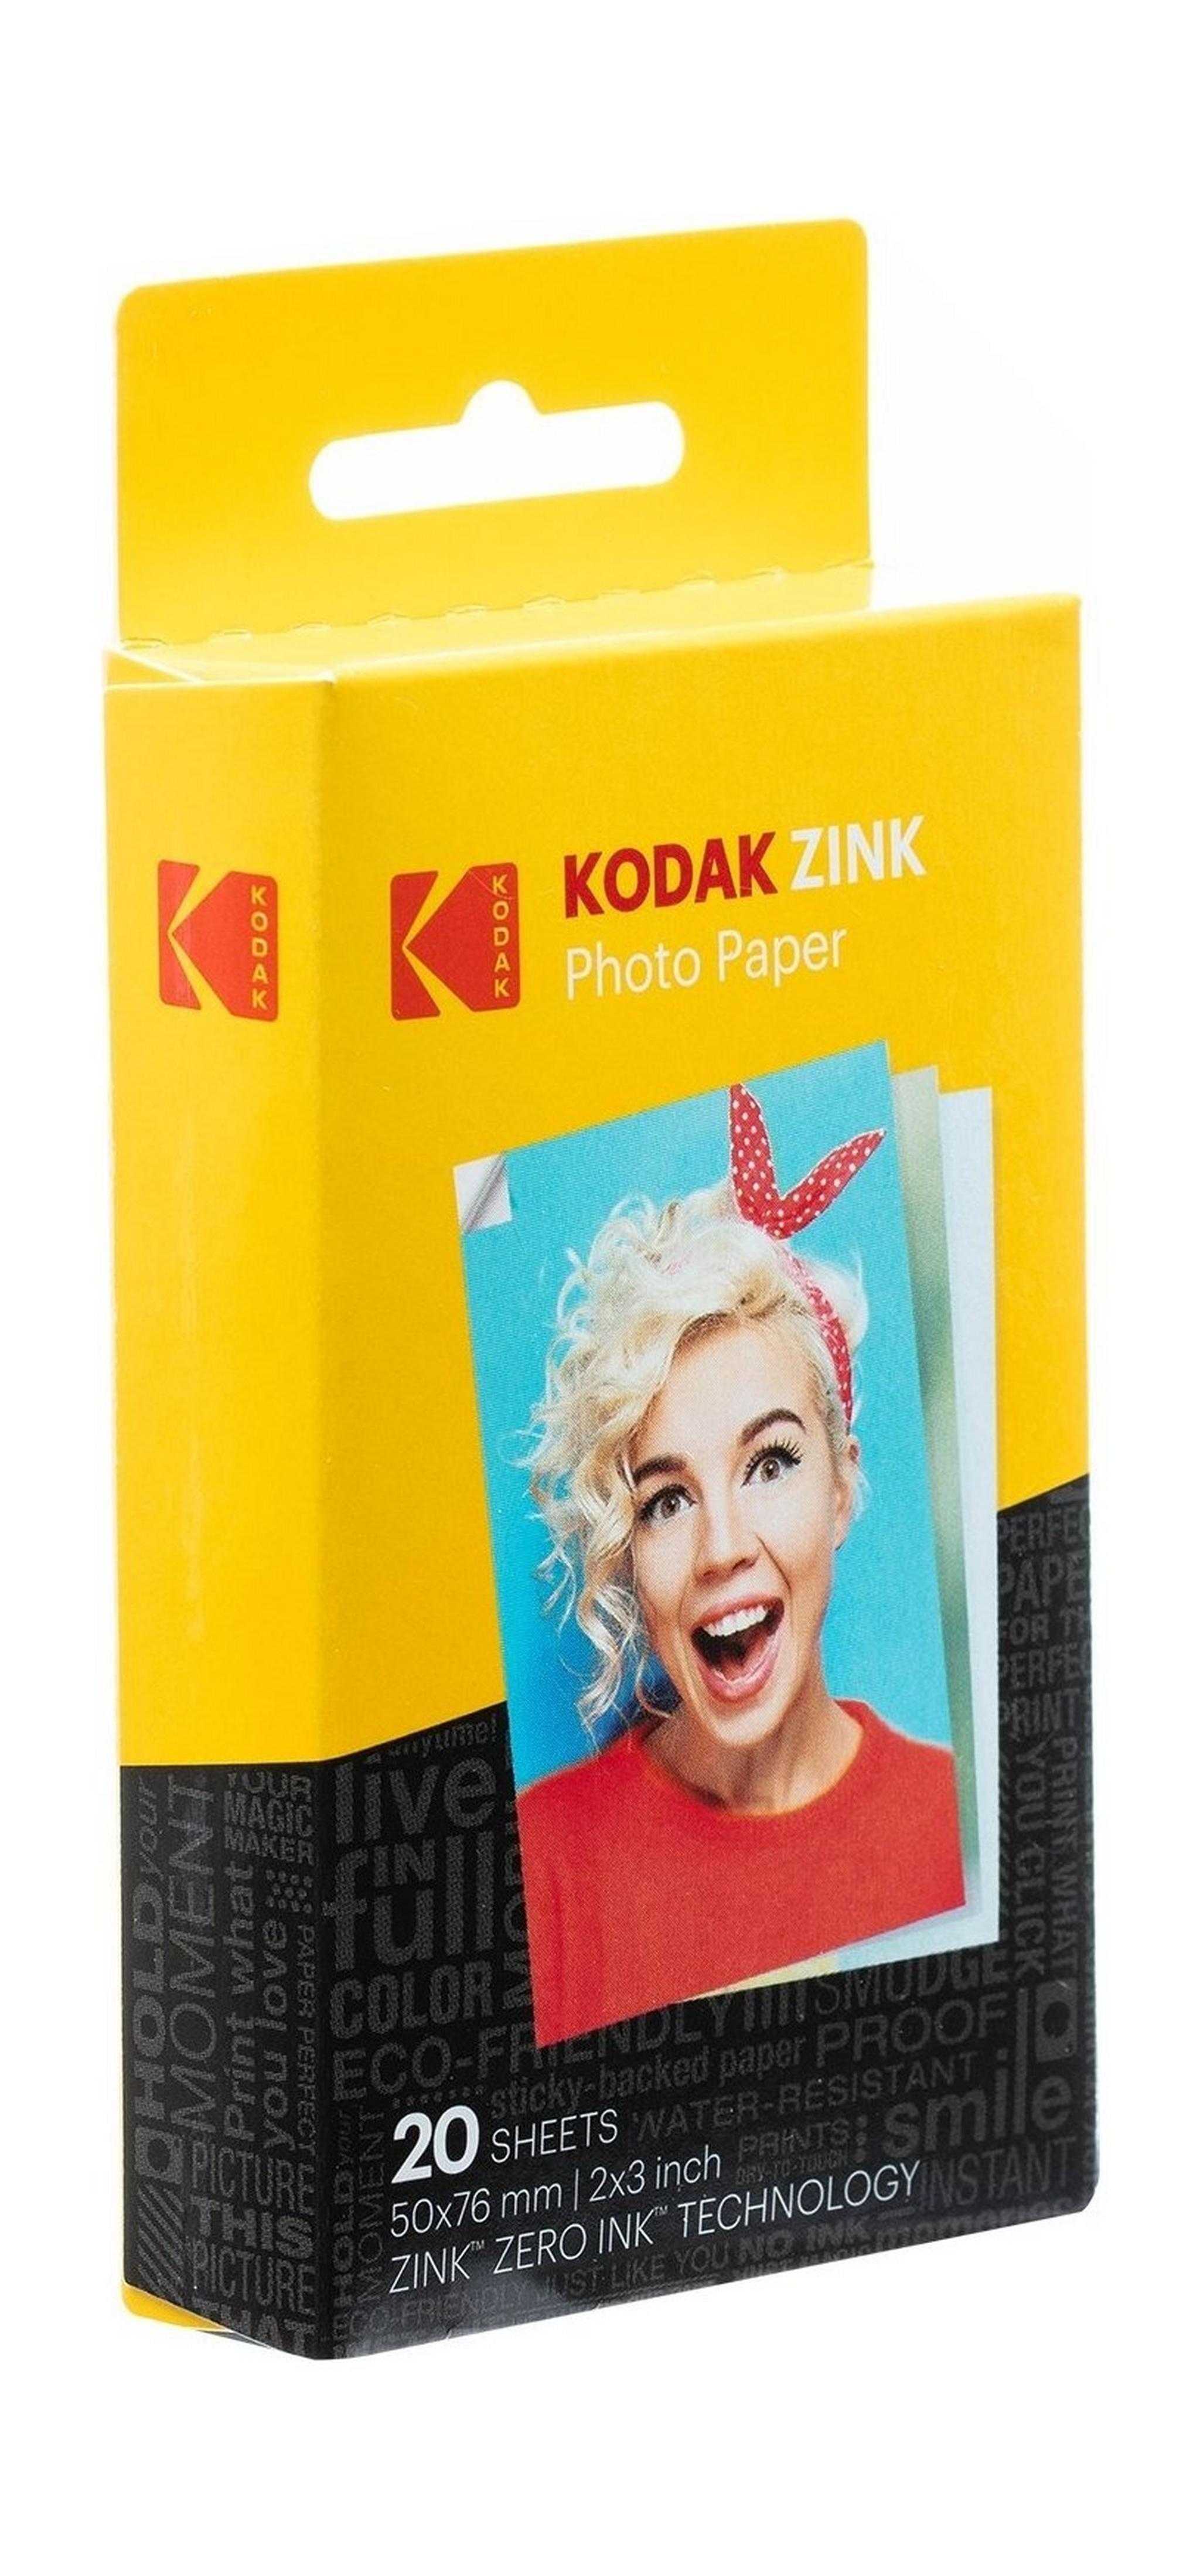 Kodak 2x3 inch Sticky-Backed ZINK Photo Paper - 20 Sheets